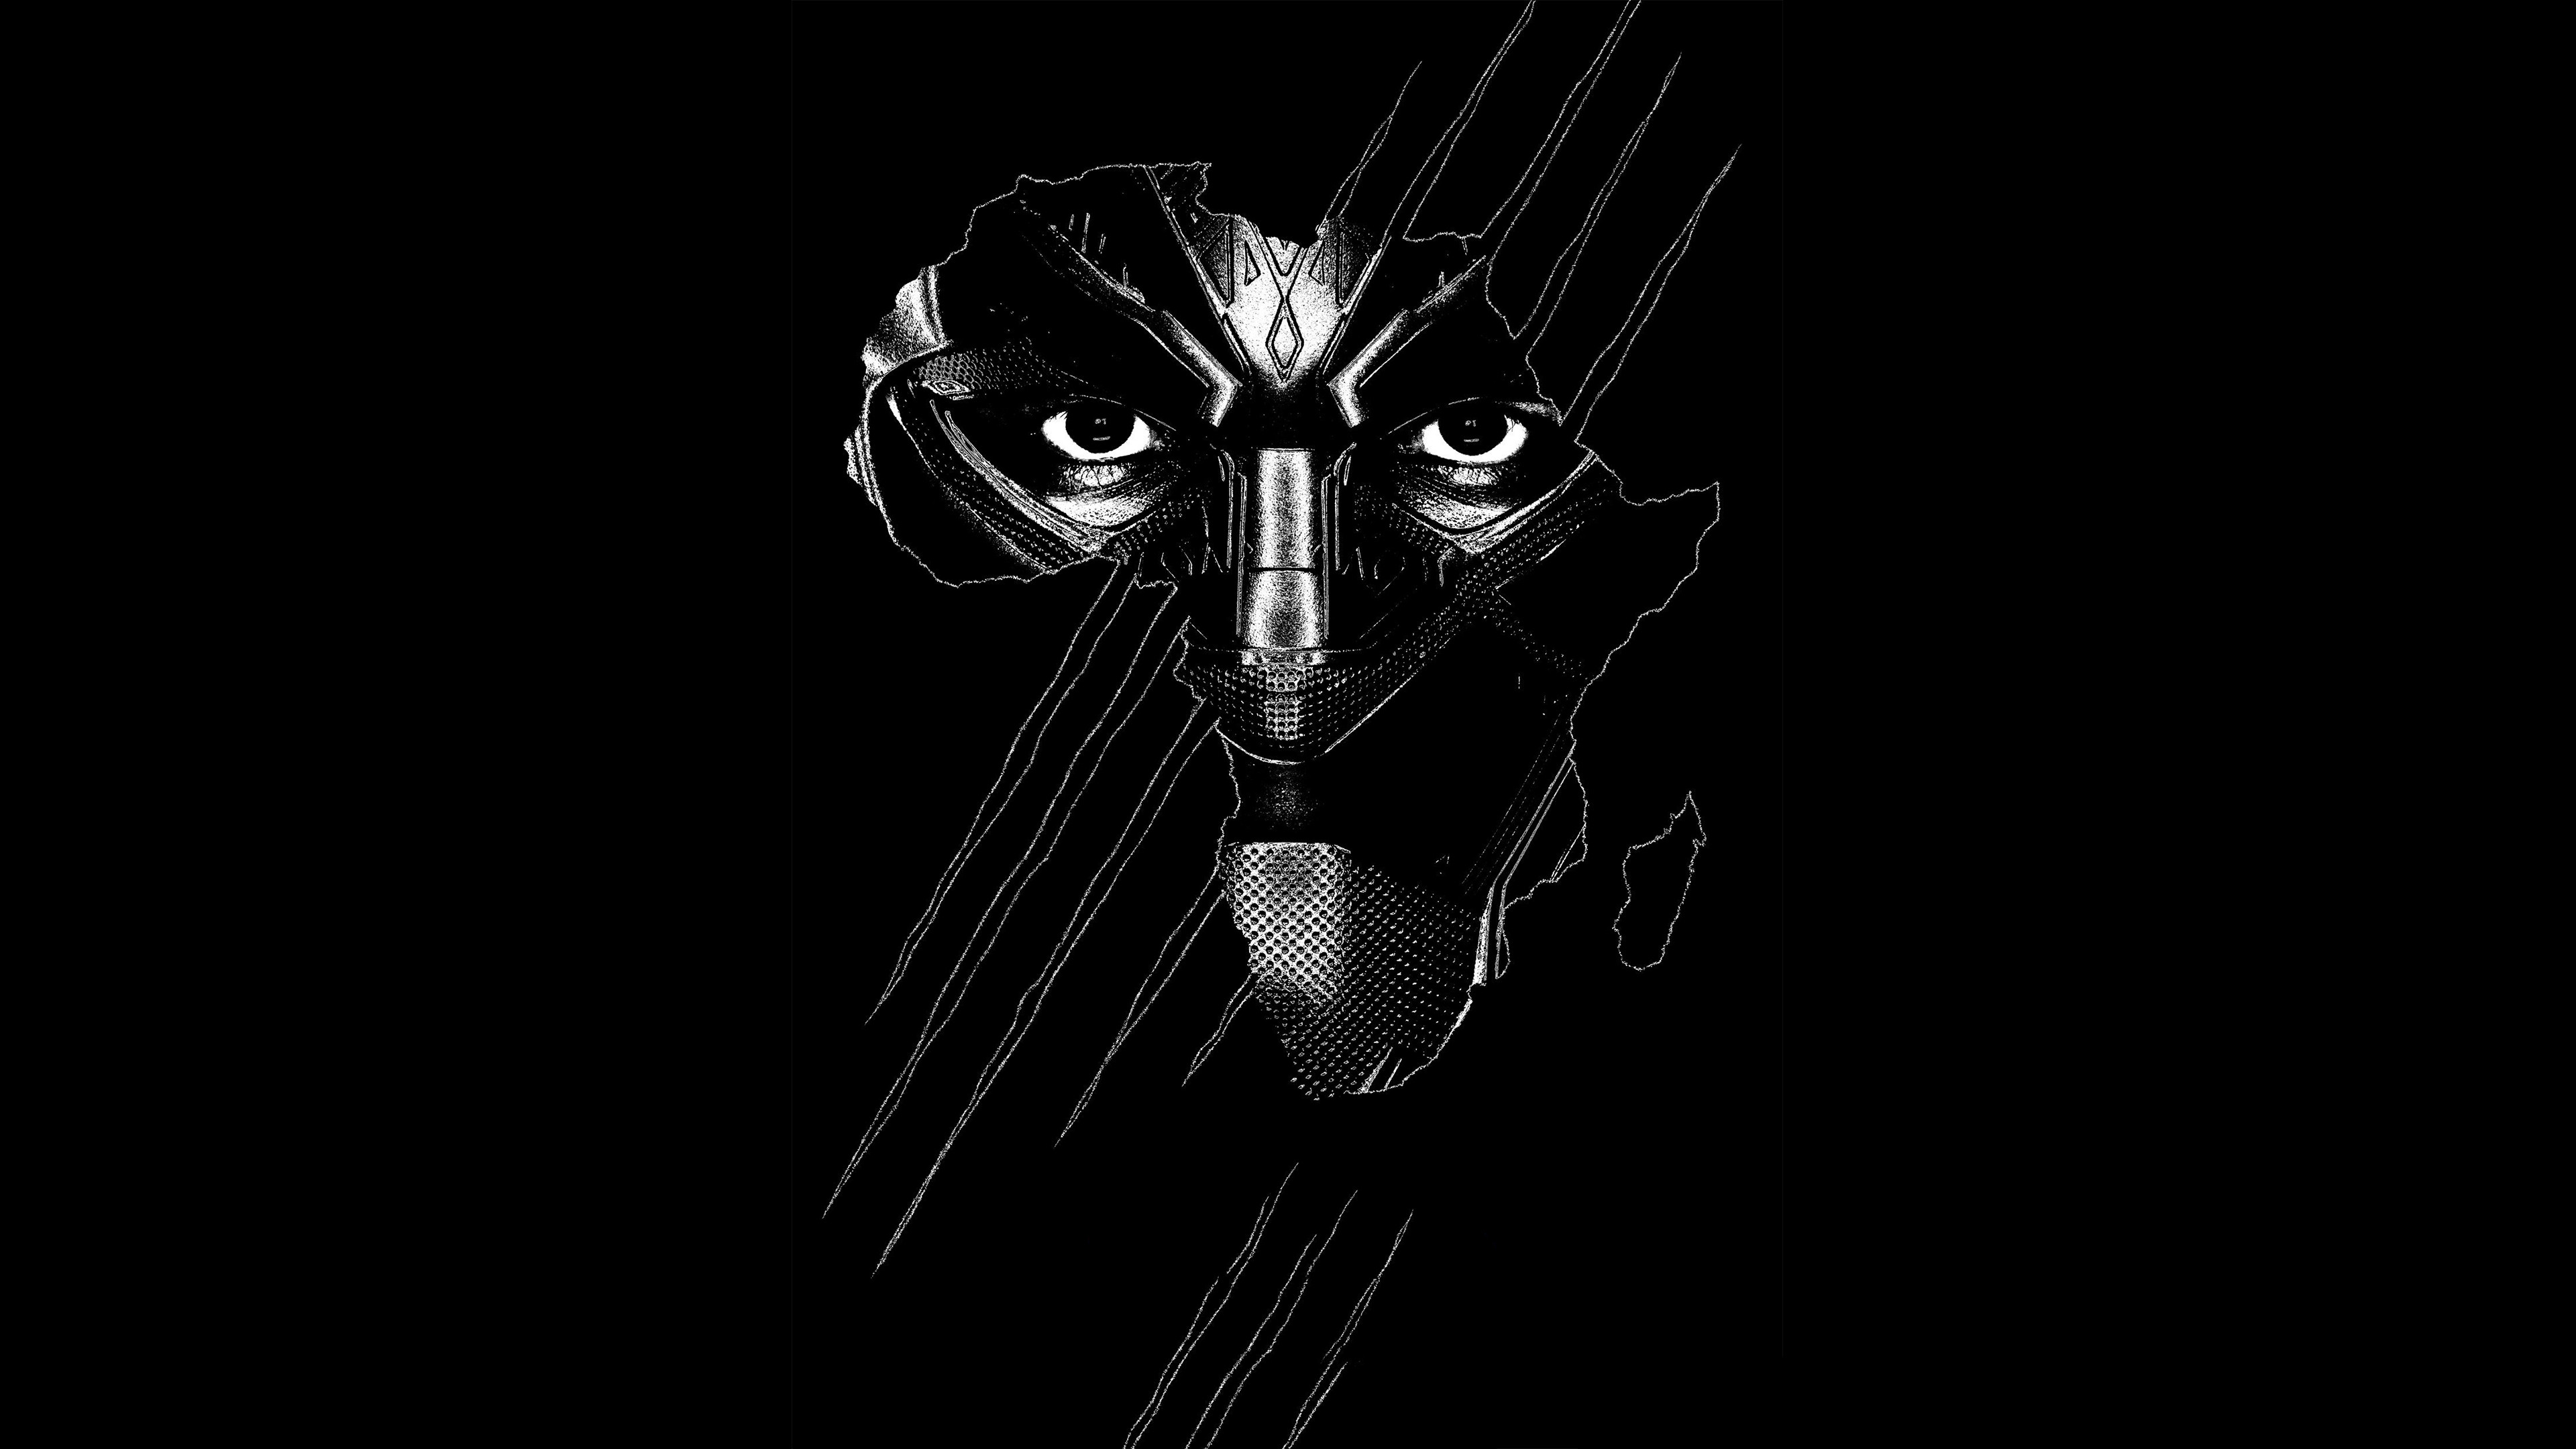 Những hình ảnh Black Panther sẽ đưa bạn vào thế giới của siêu anh hùng đầy mạnh mẽ và oai hùng. Hãy cùng chiêm ngưỡng bộ sưu tập hình ảnh đầy tinh tế và sắc nét về Black Panther tại đây và cảm nhận sự phi thường của anh hùng này.